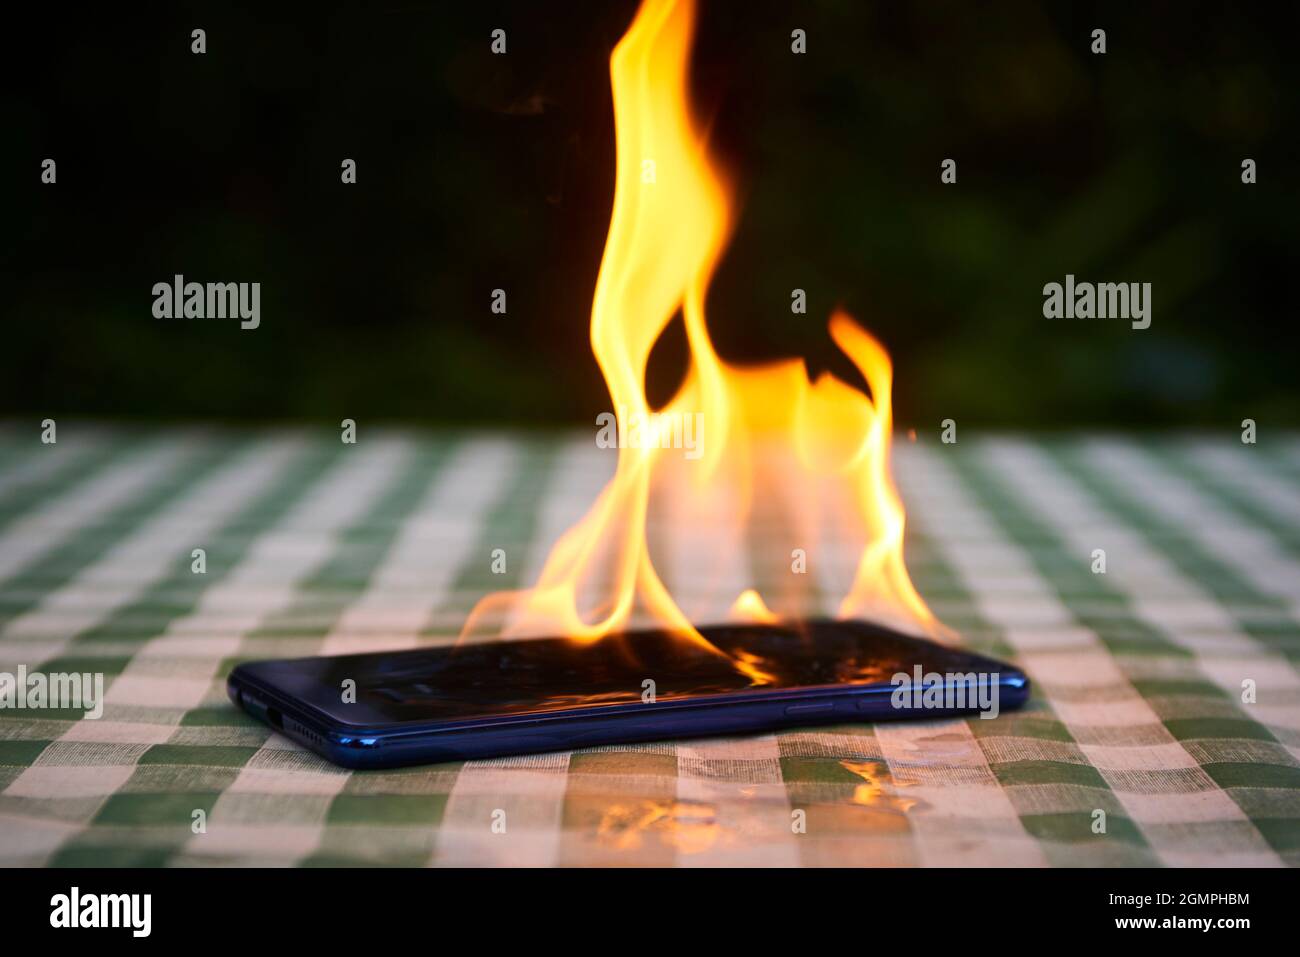 Handy explodiert und brennt. Explosion und Brand von Mobiltelefonen. Gefahr für Smartphones durch Übernutzung oder schlechte Herstellung. Überhitzung wird verbrannt Stockfoto